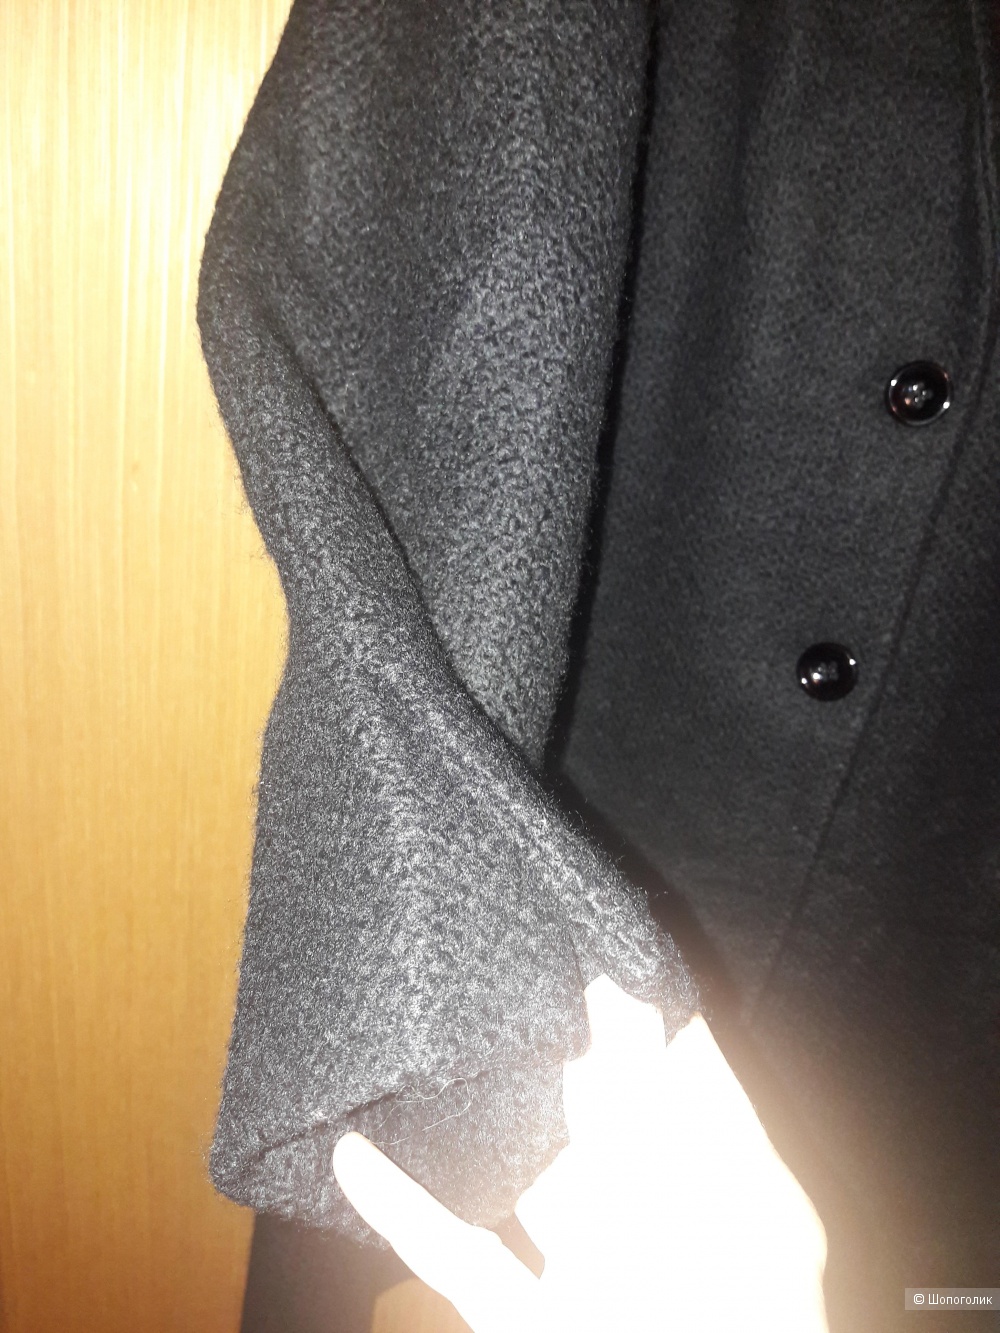 Шерстяное пальто Manuela Conti 48-50 размера